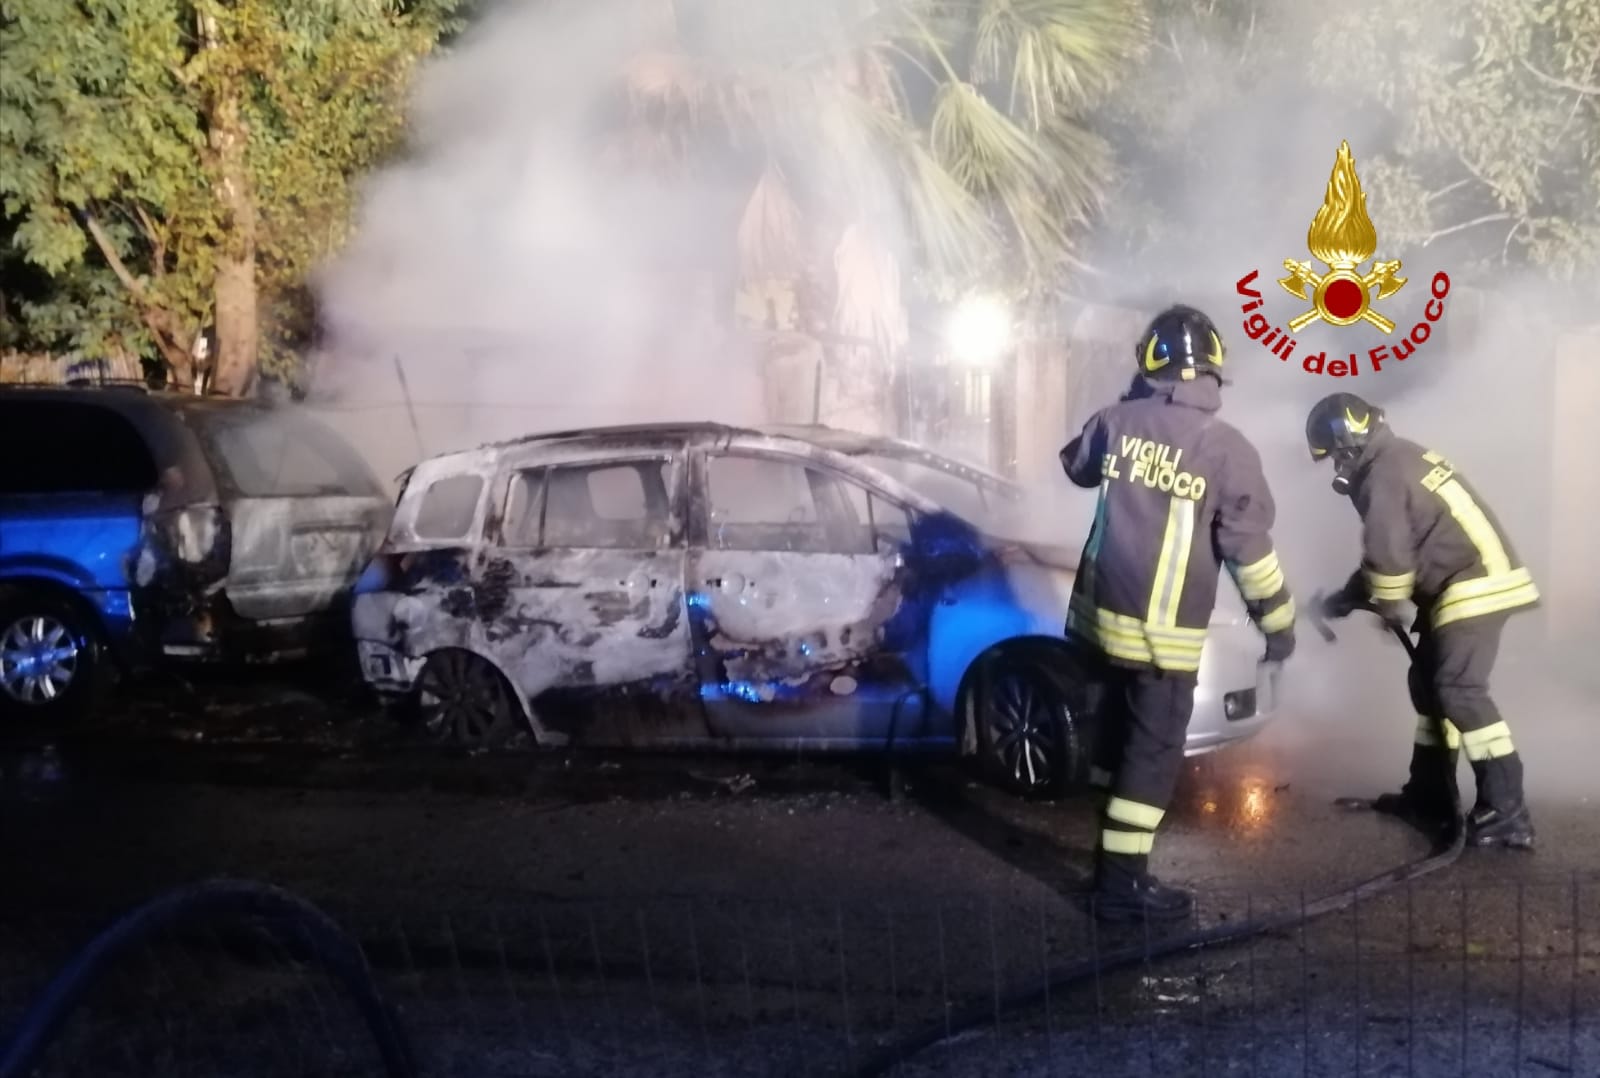 A fuoco due auto parcheggiate in un'area rurale